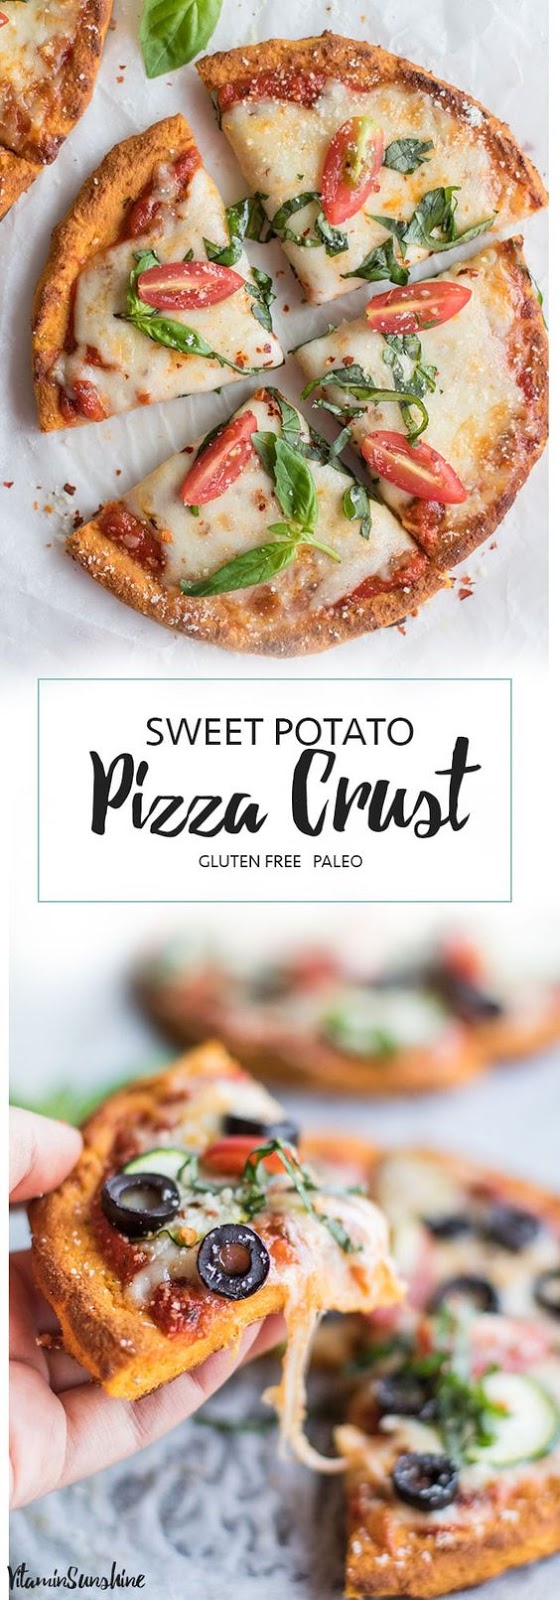 Páleo Sweet Potáto Pízzá Crust Recípe | Healthy Food